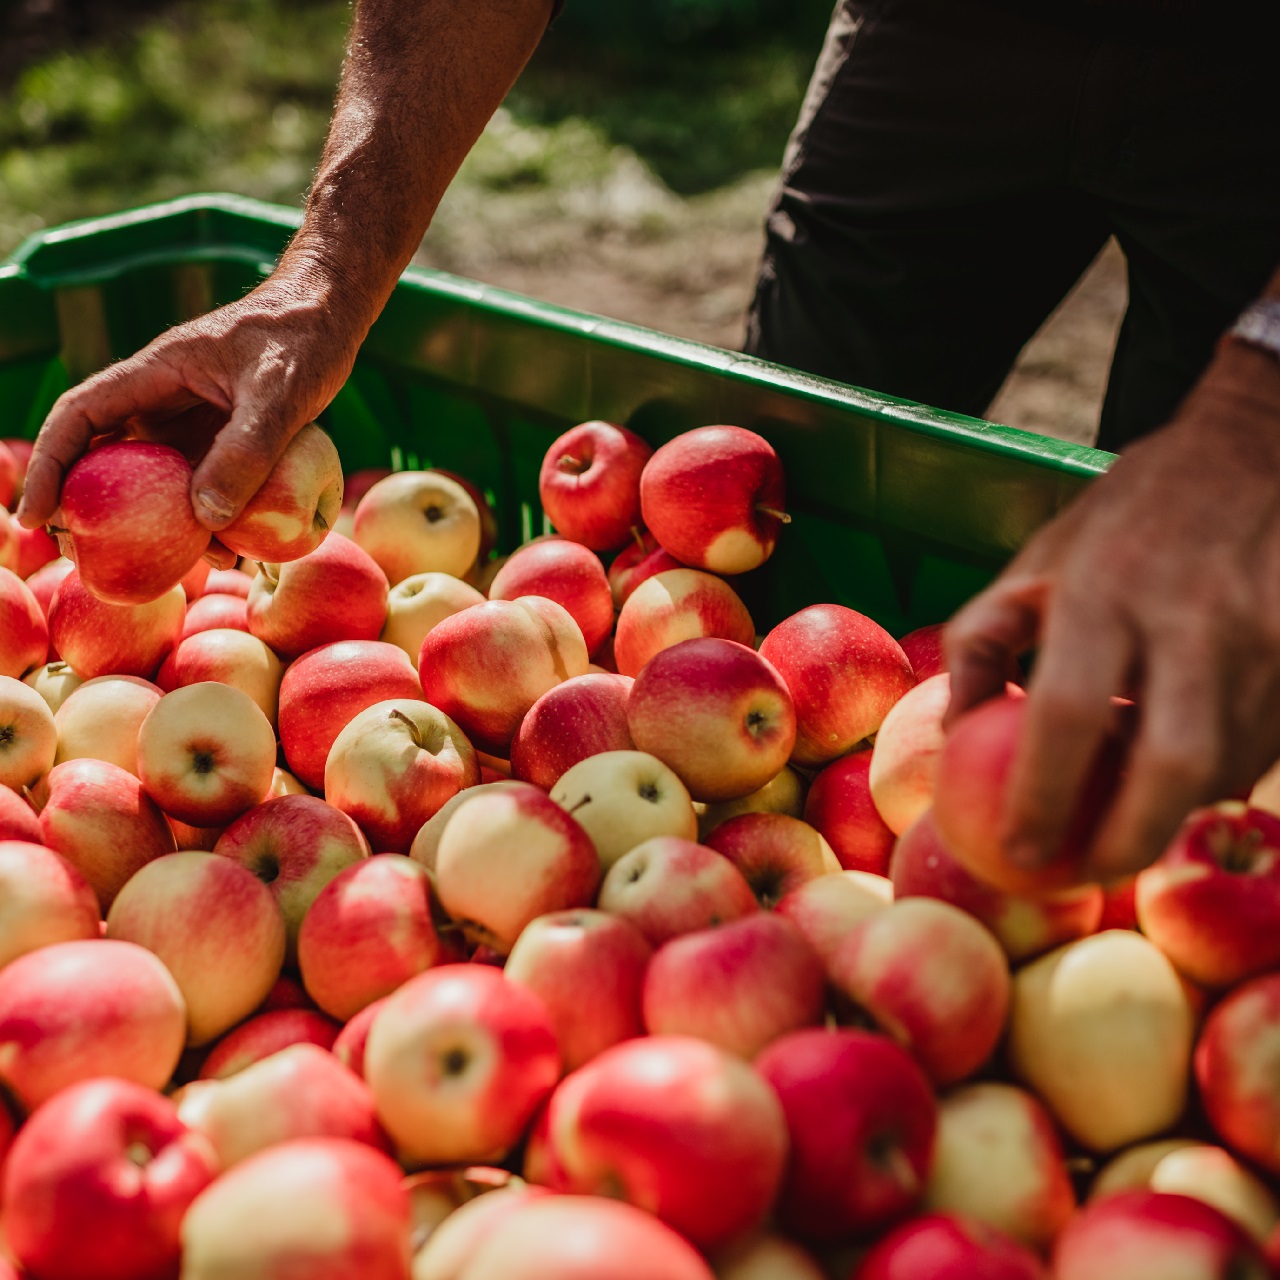 Waalhof organic farm holidays, harvesting apples